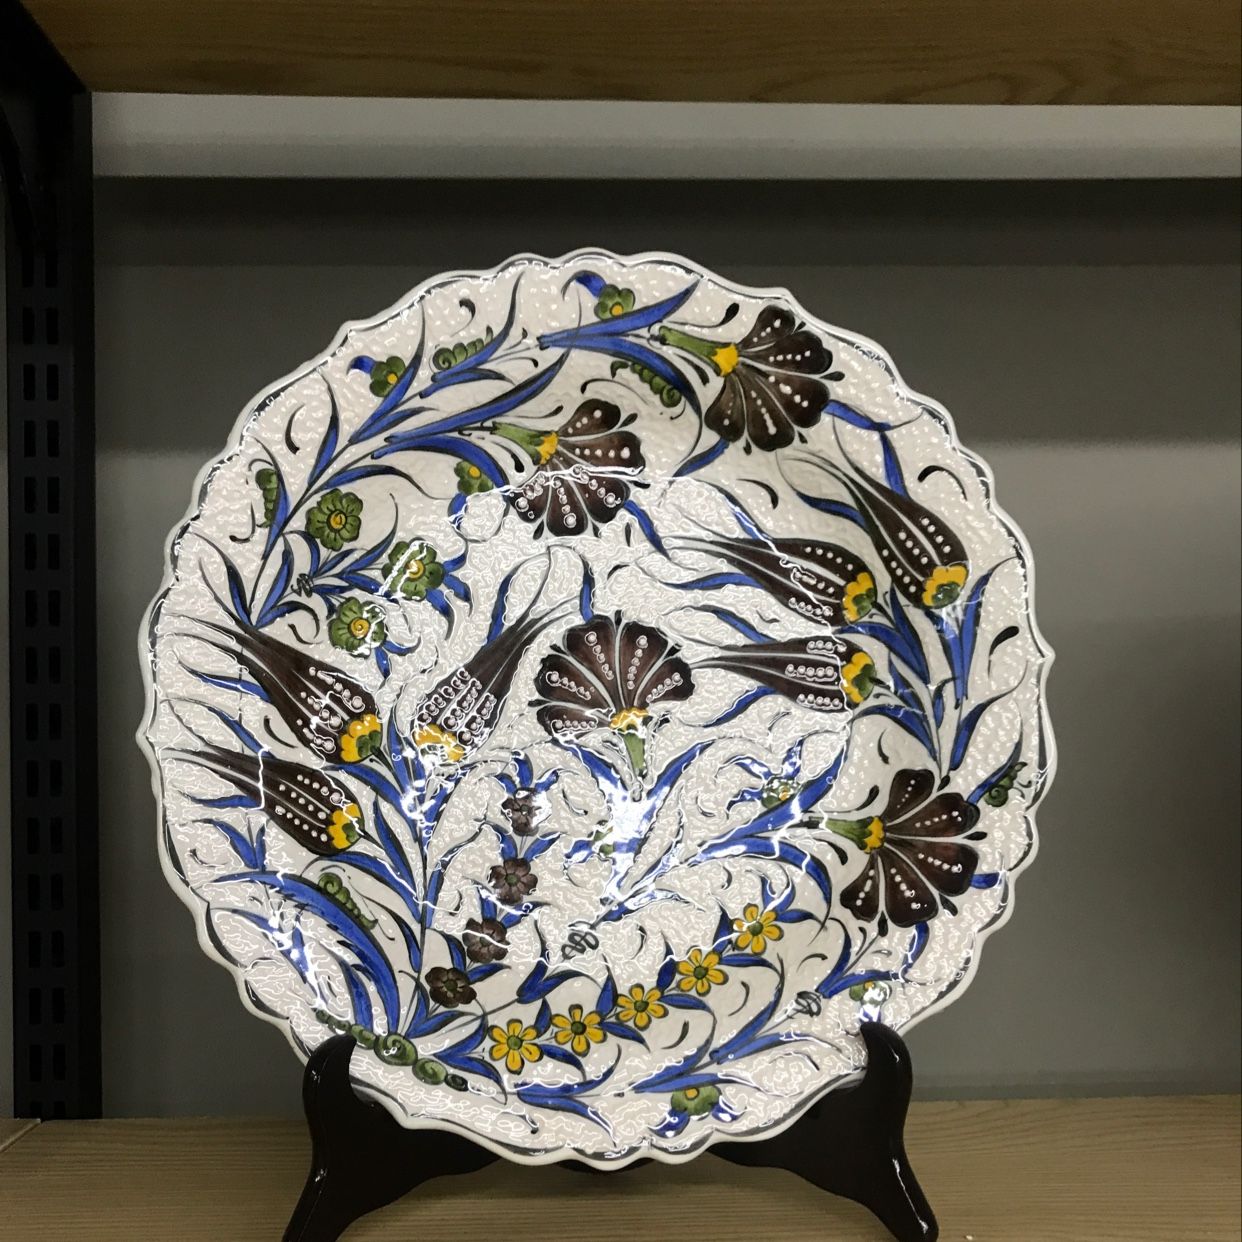 土耳其手绘花陶瓷盘10陶瓷杯咖啡杯茶杯款式多花语1